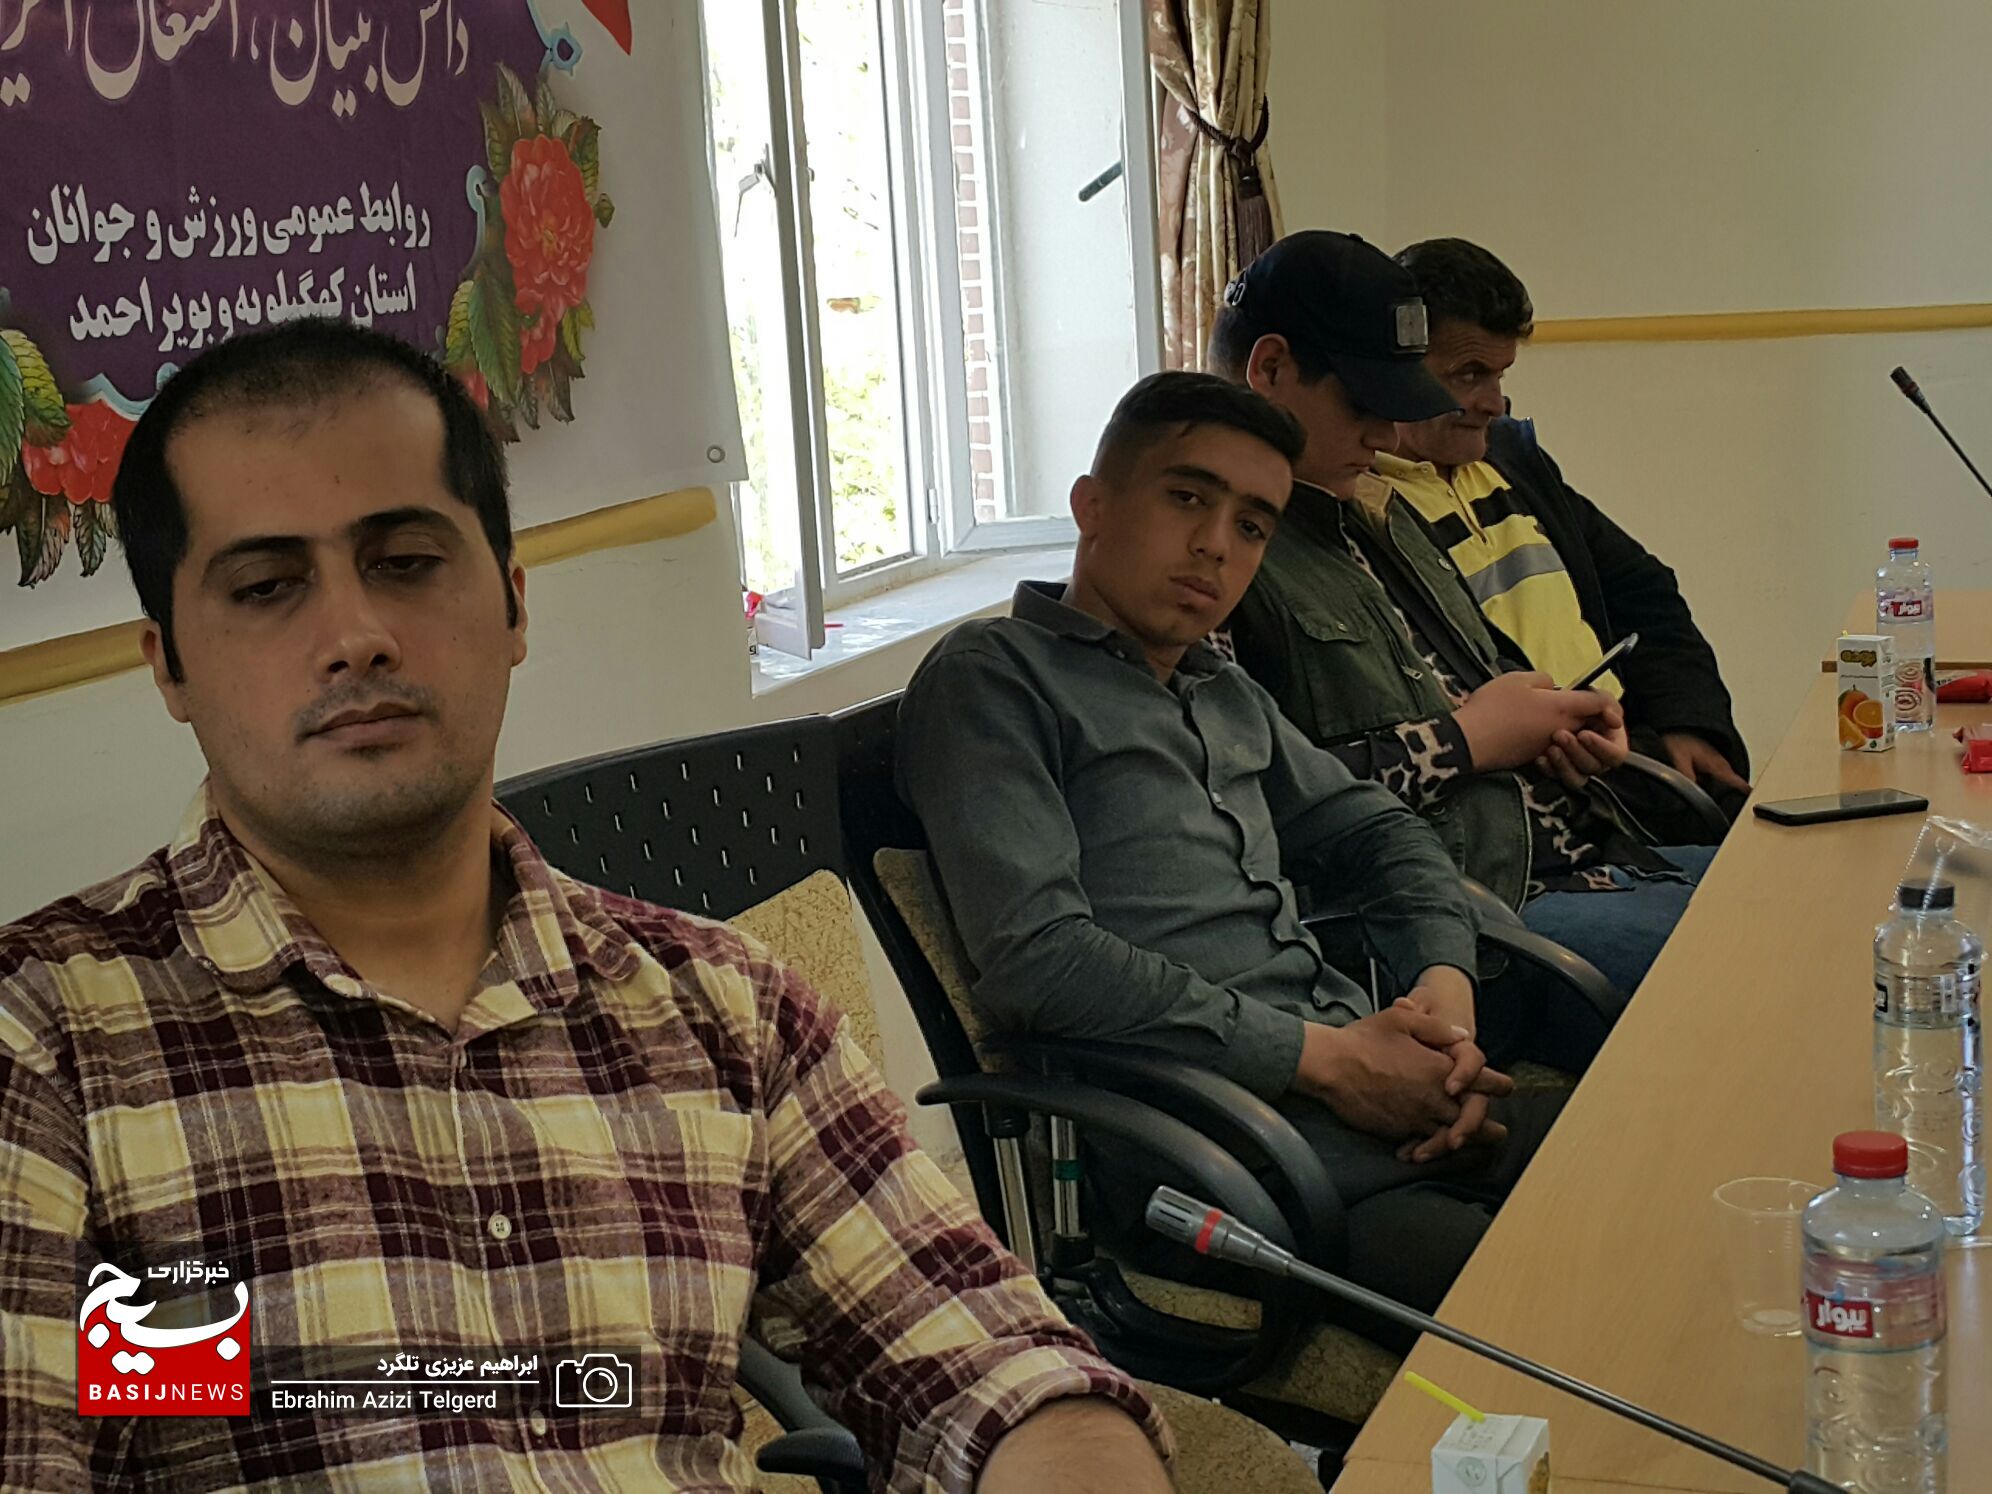 برگزاری نشست علمی تخصصی جوانان در یاسوج